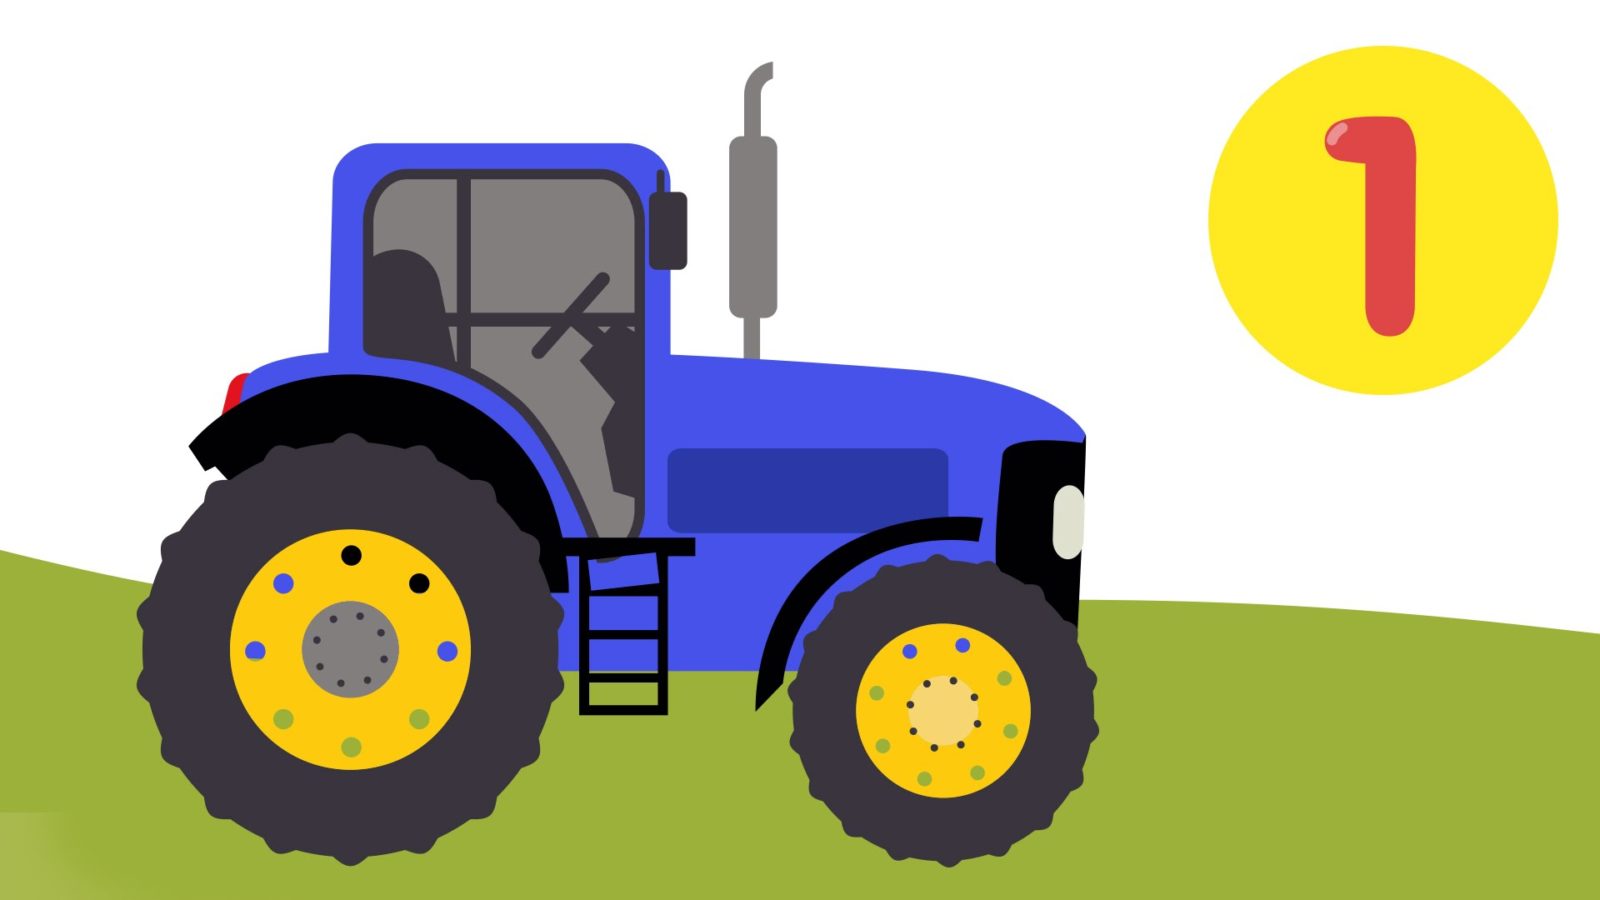 Сини1 трактор для малышей. Синий трактор. Трактор мультяшный. Трактор синий для детей. Изображение трактора для детей.